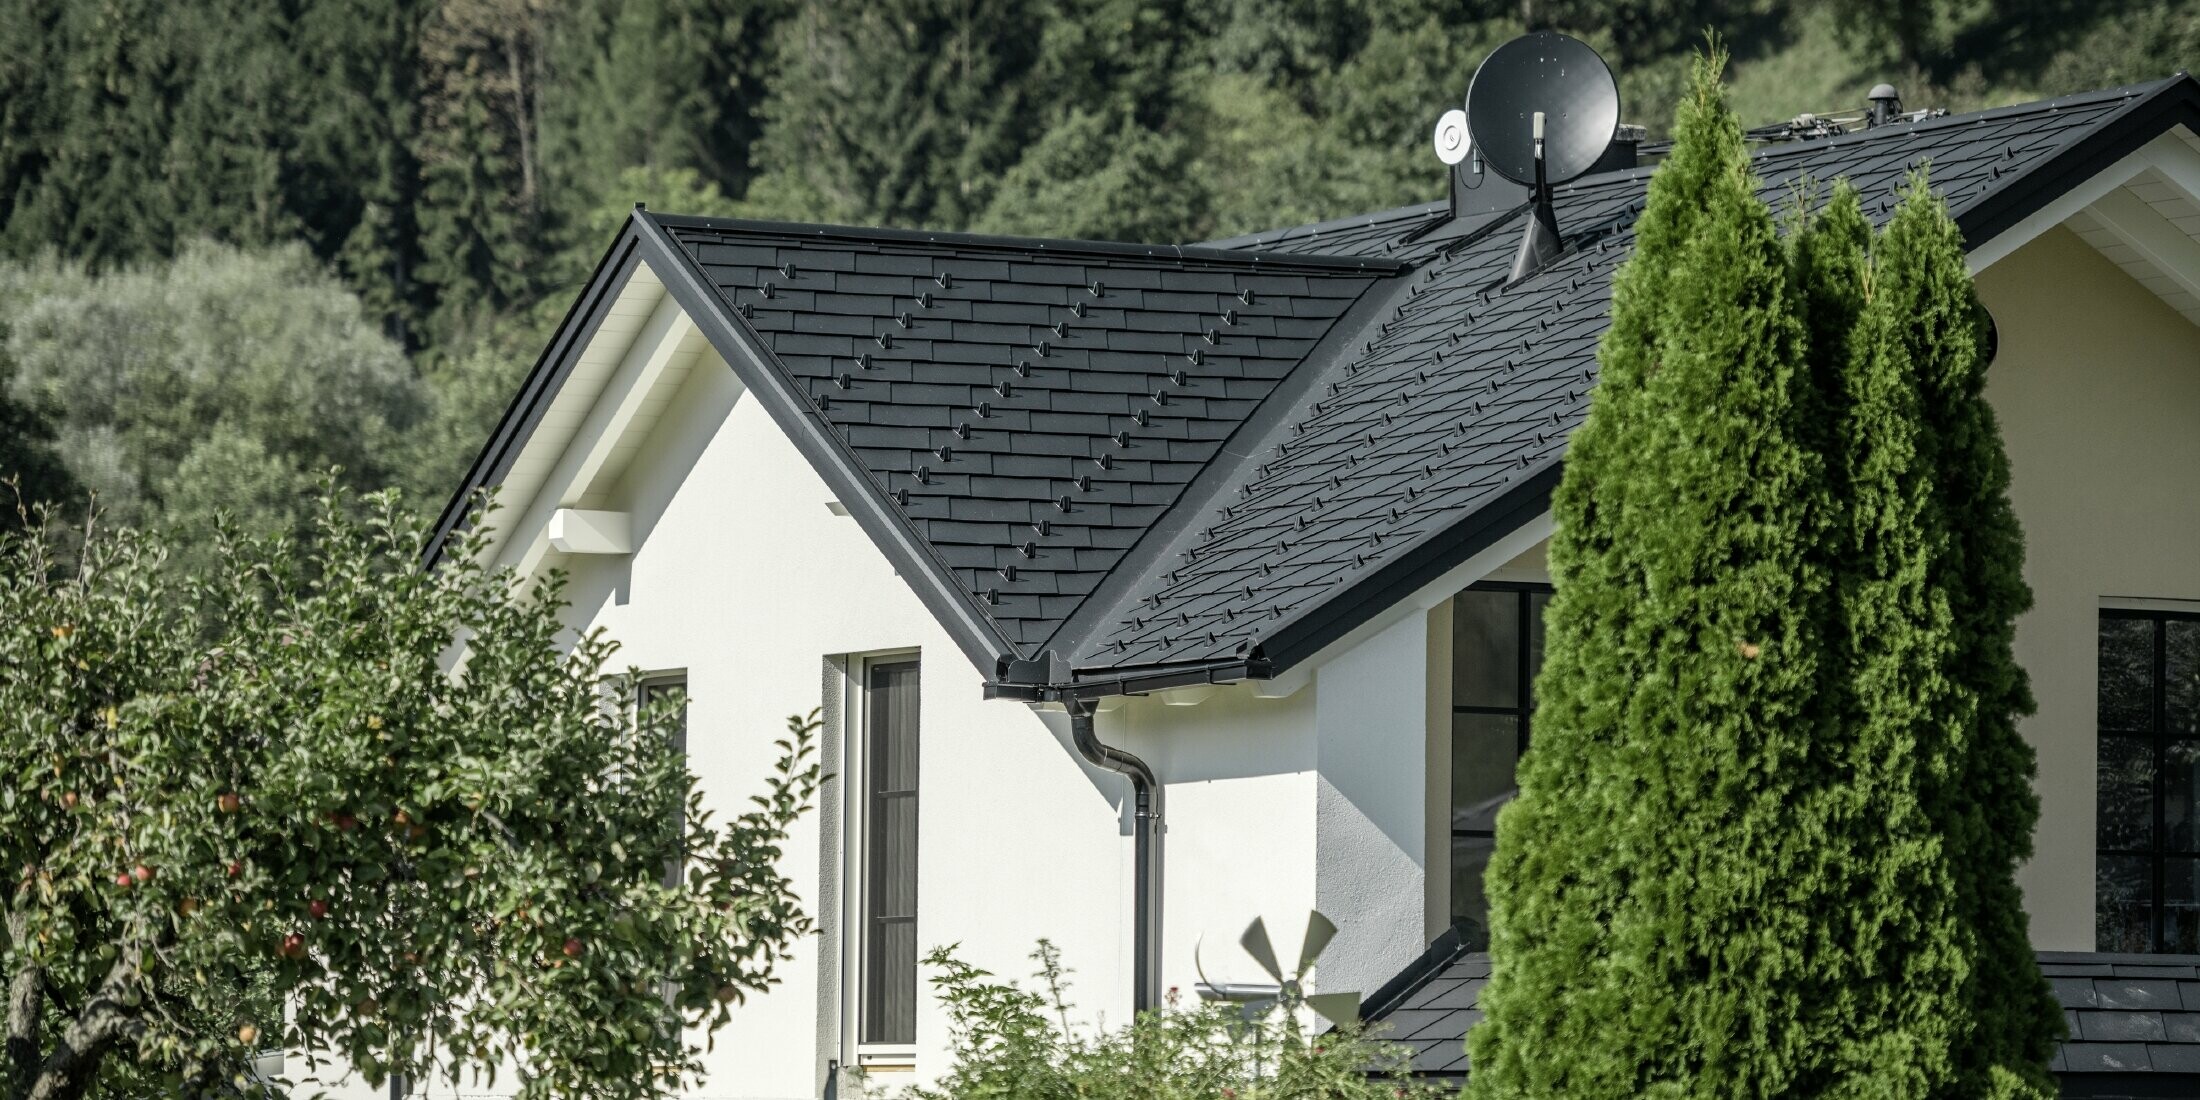 Zrekonstruovaná střecha s hliníkovým PREFA šindelemv barvě P.10 černé, s úžlabím